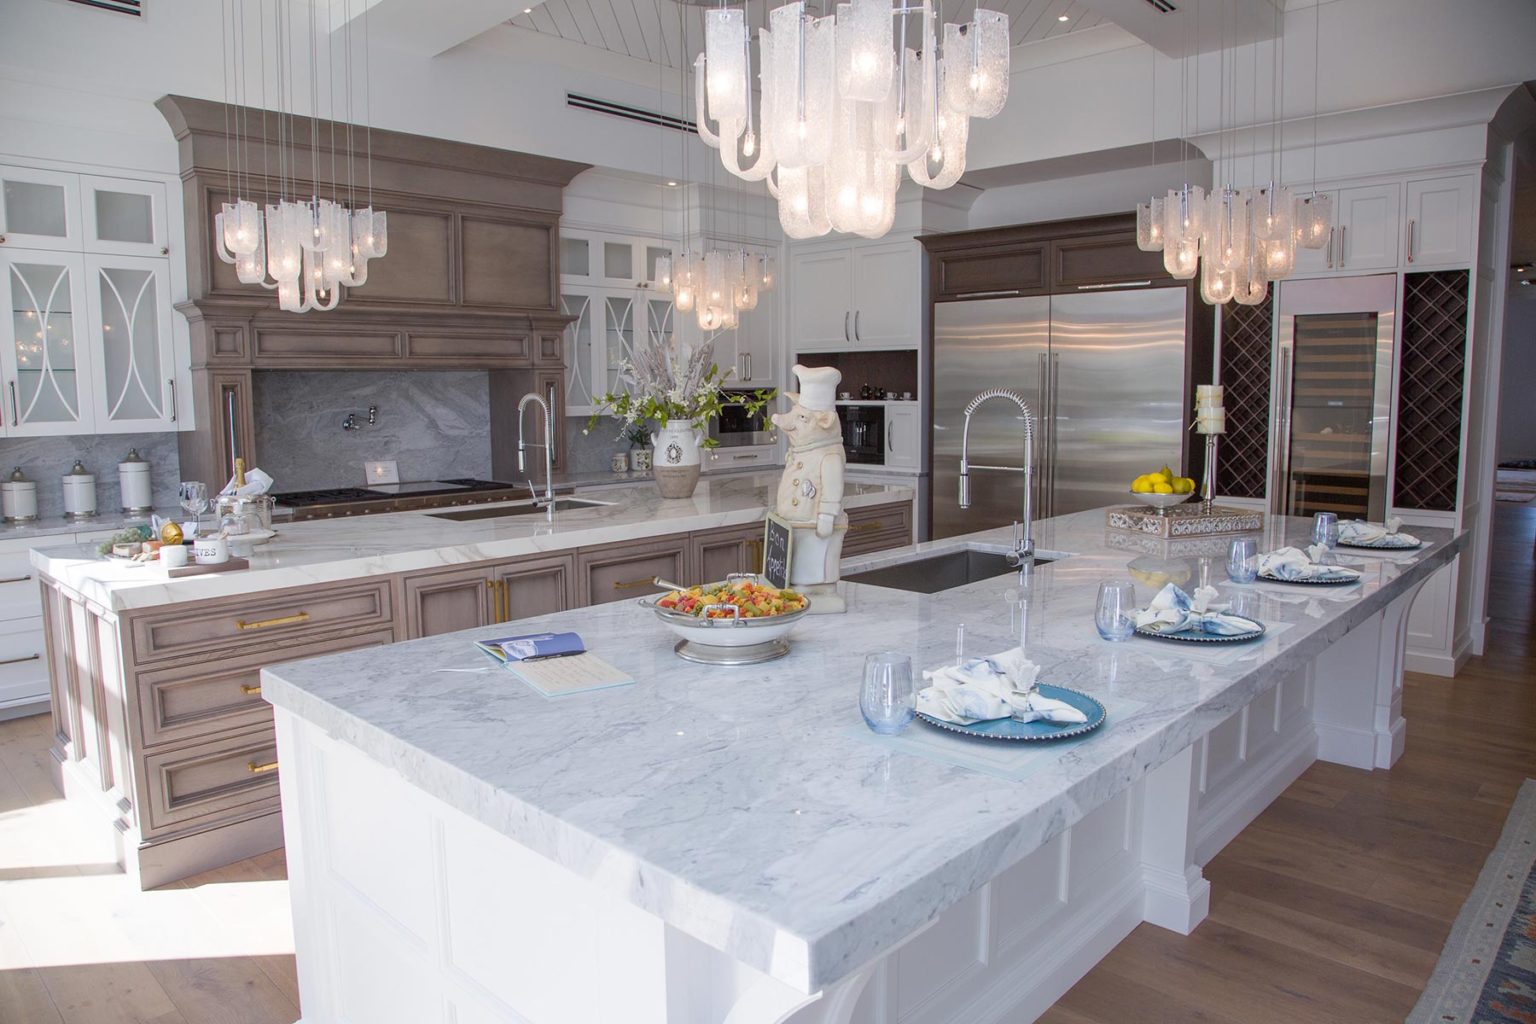 Exquisite Kitchen Displays At Hamptons LKB Showroom 1536x1024 